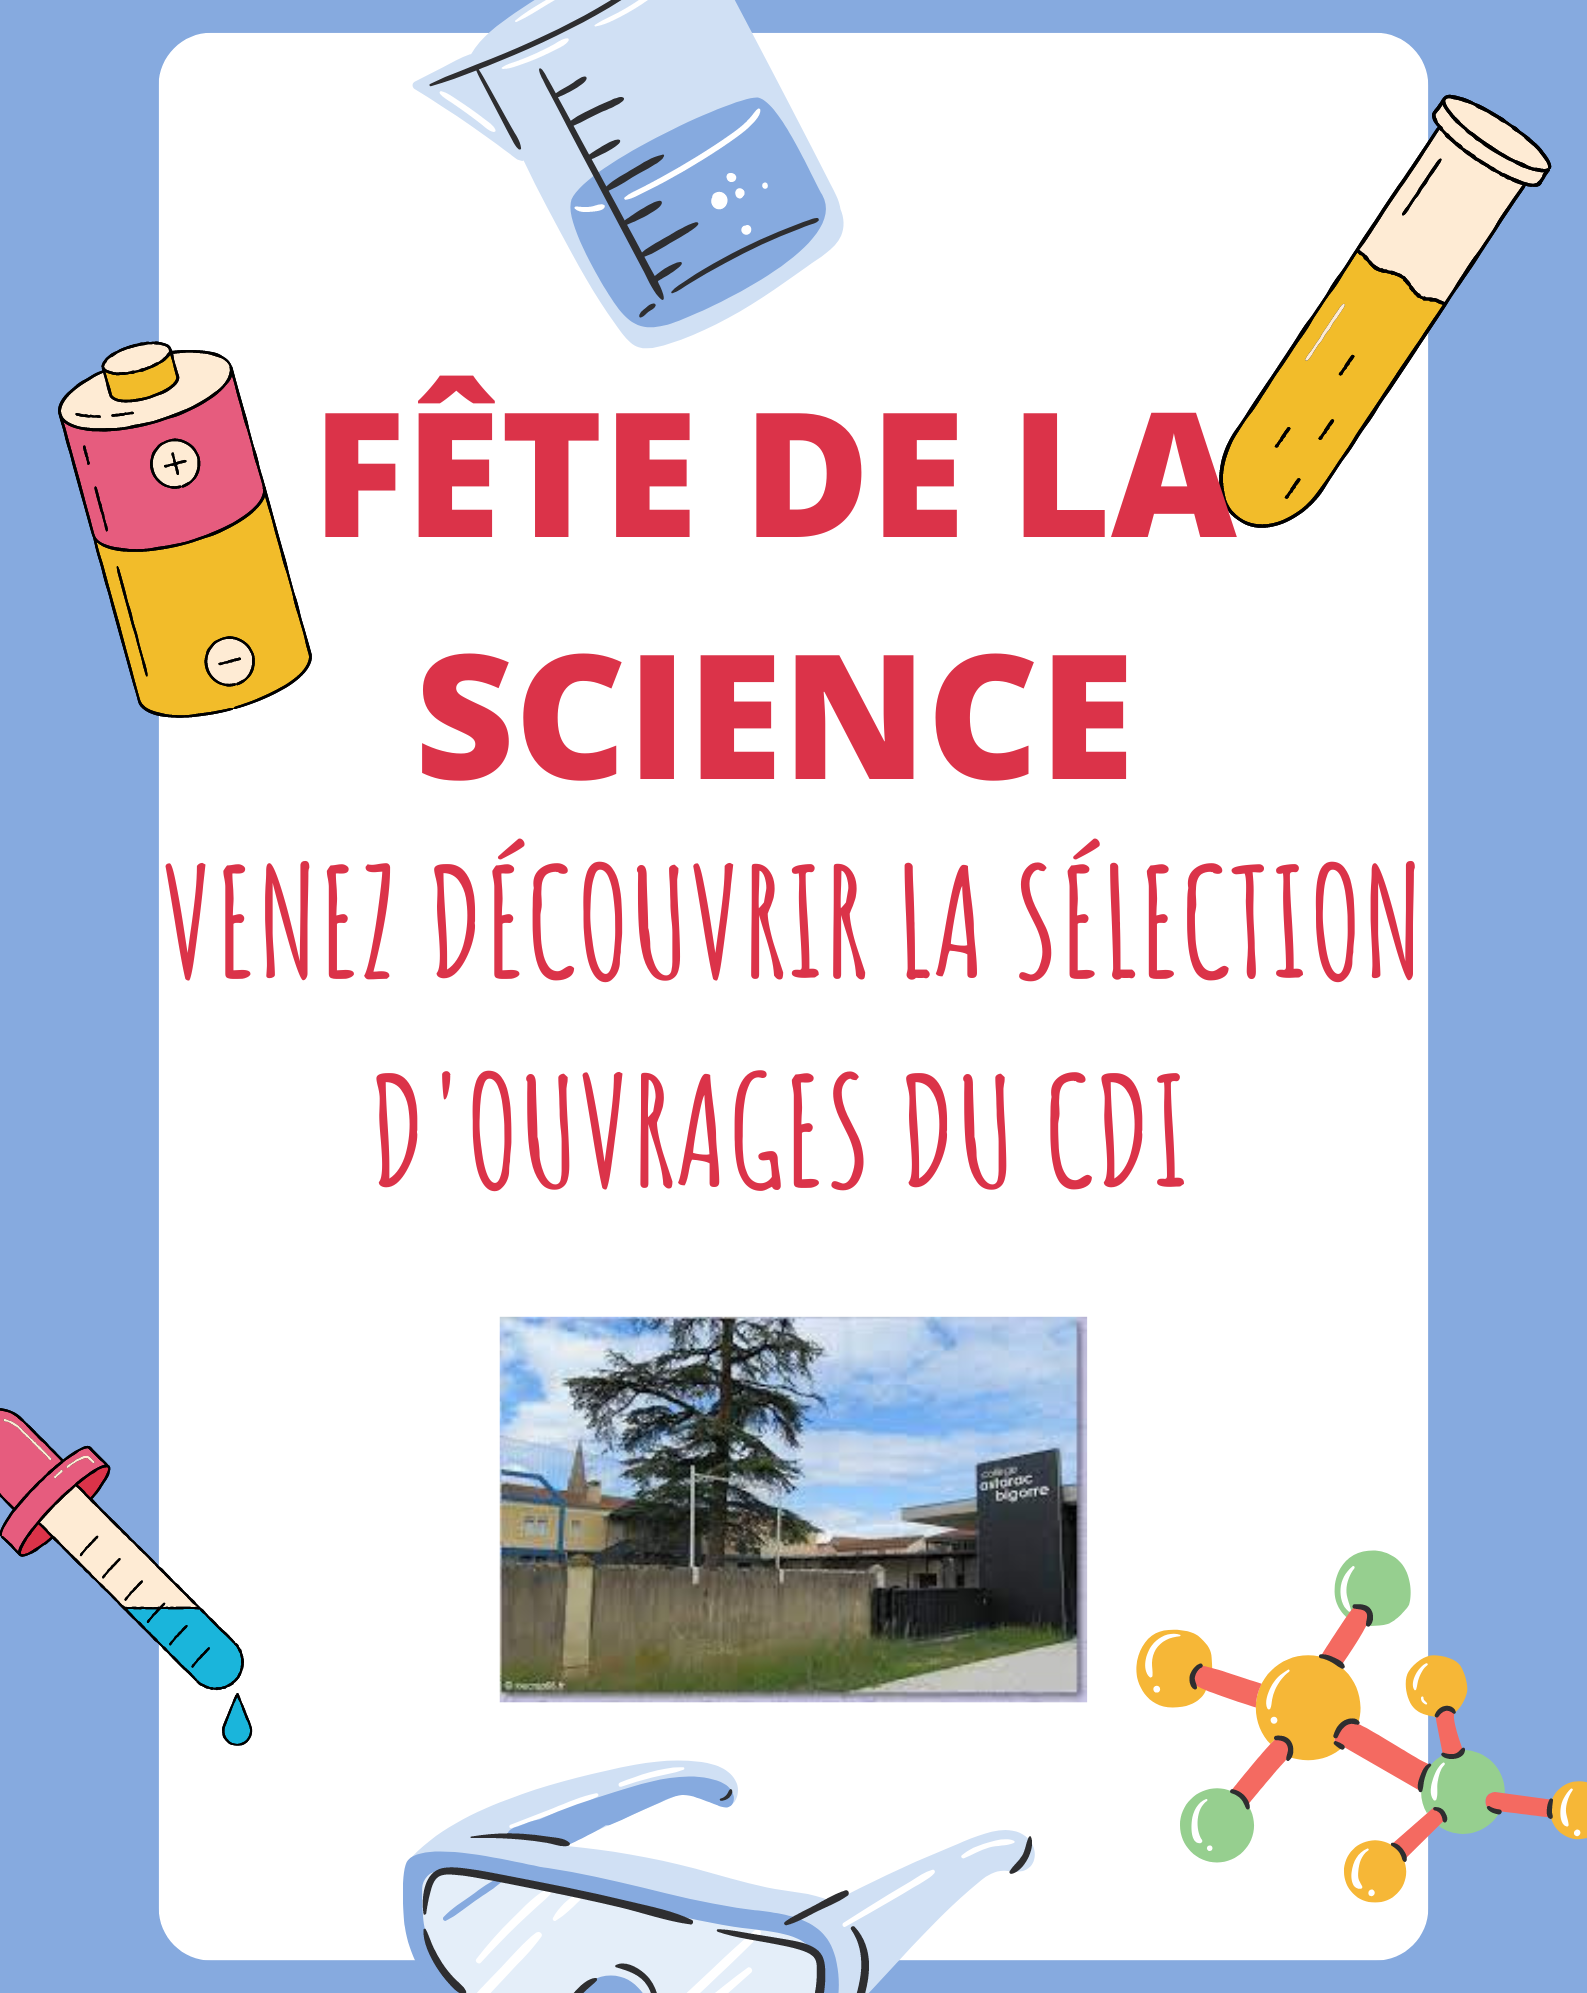 FETE DE LA SCIENCE.png